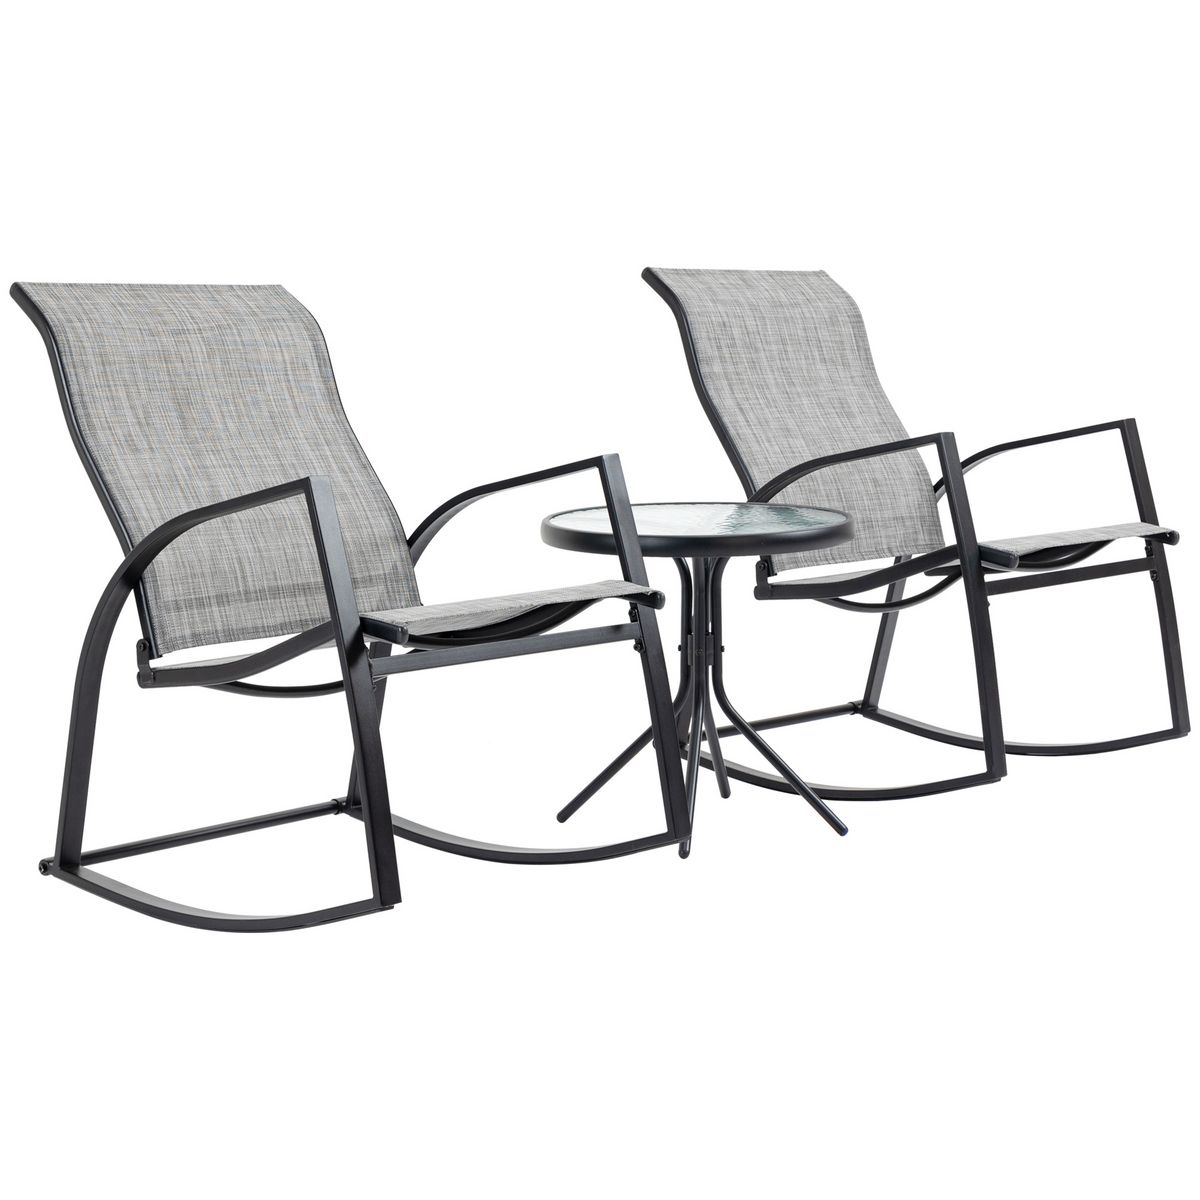 OUTSUNNY Ensemble de jardin 3 pièces 2 fauteuils à bascule table basse plateau verre trempé acier époxy textilène gris